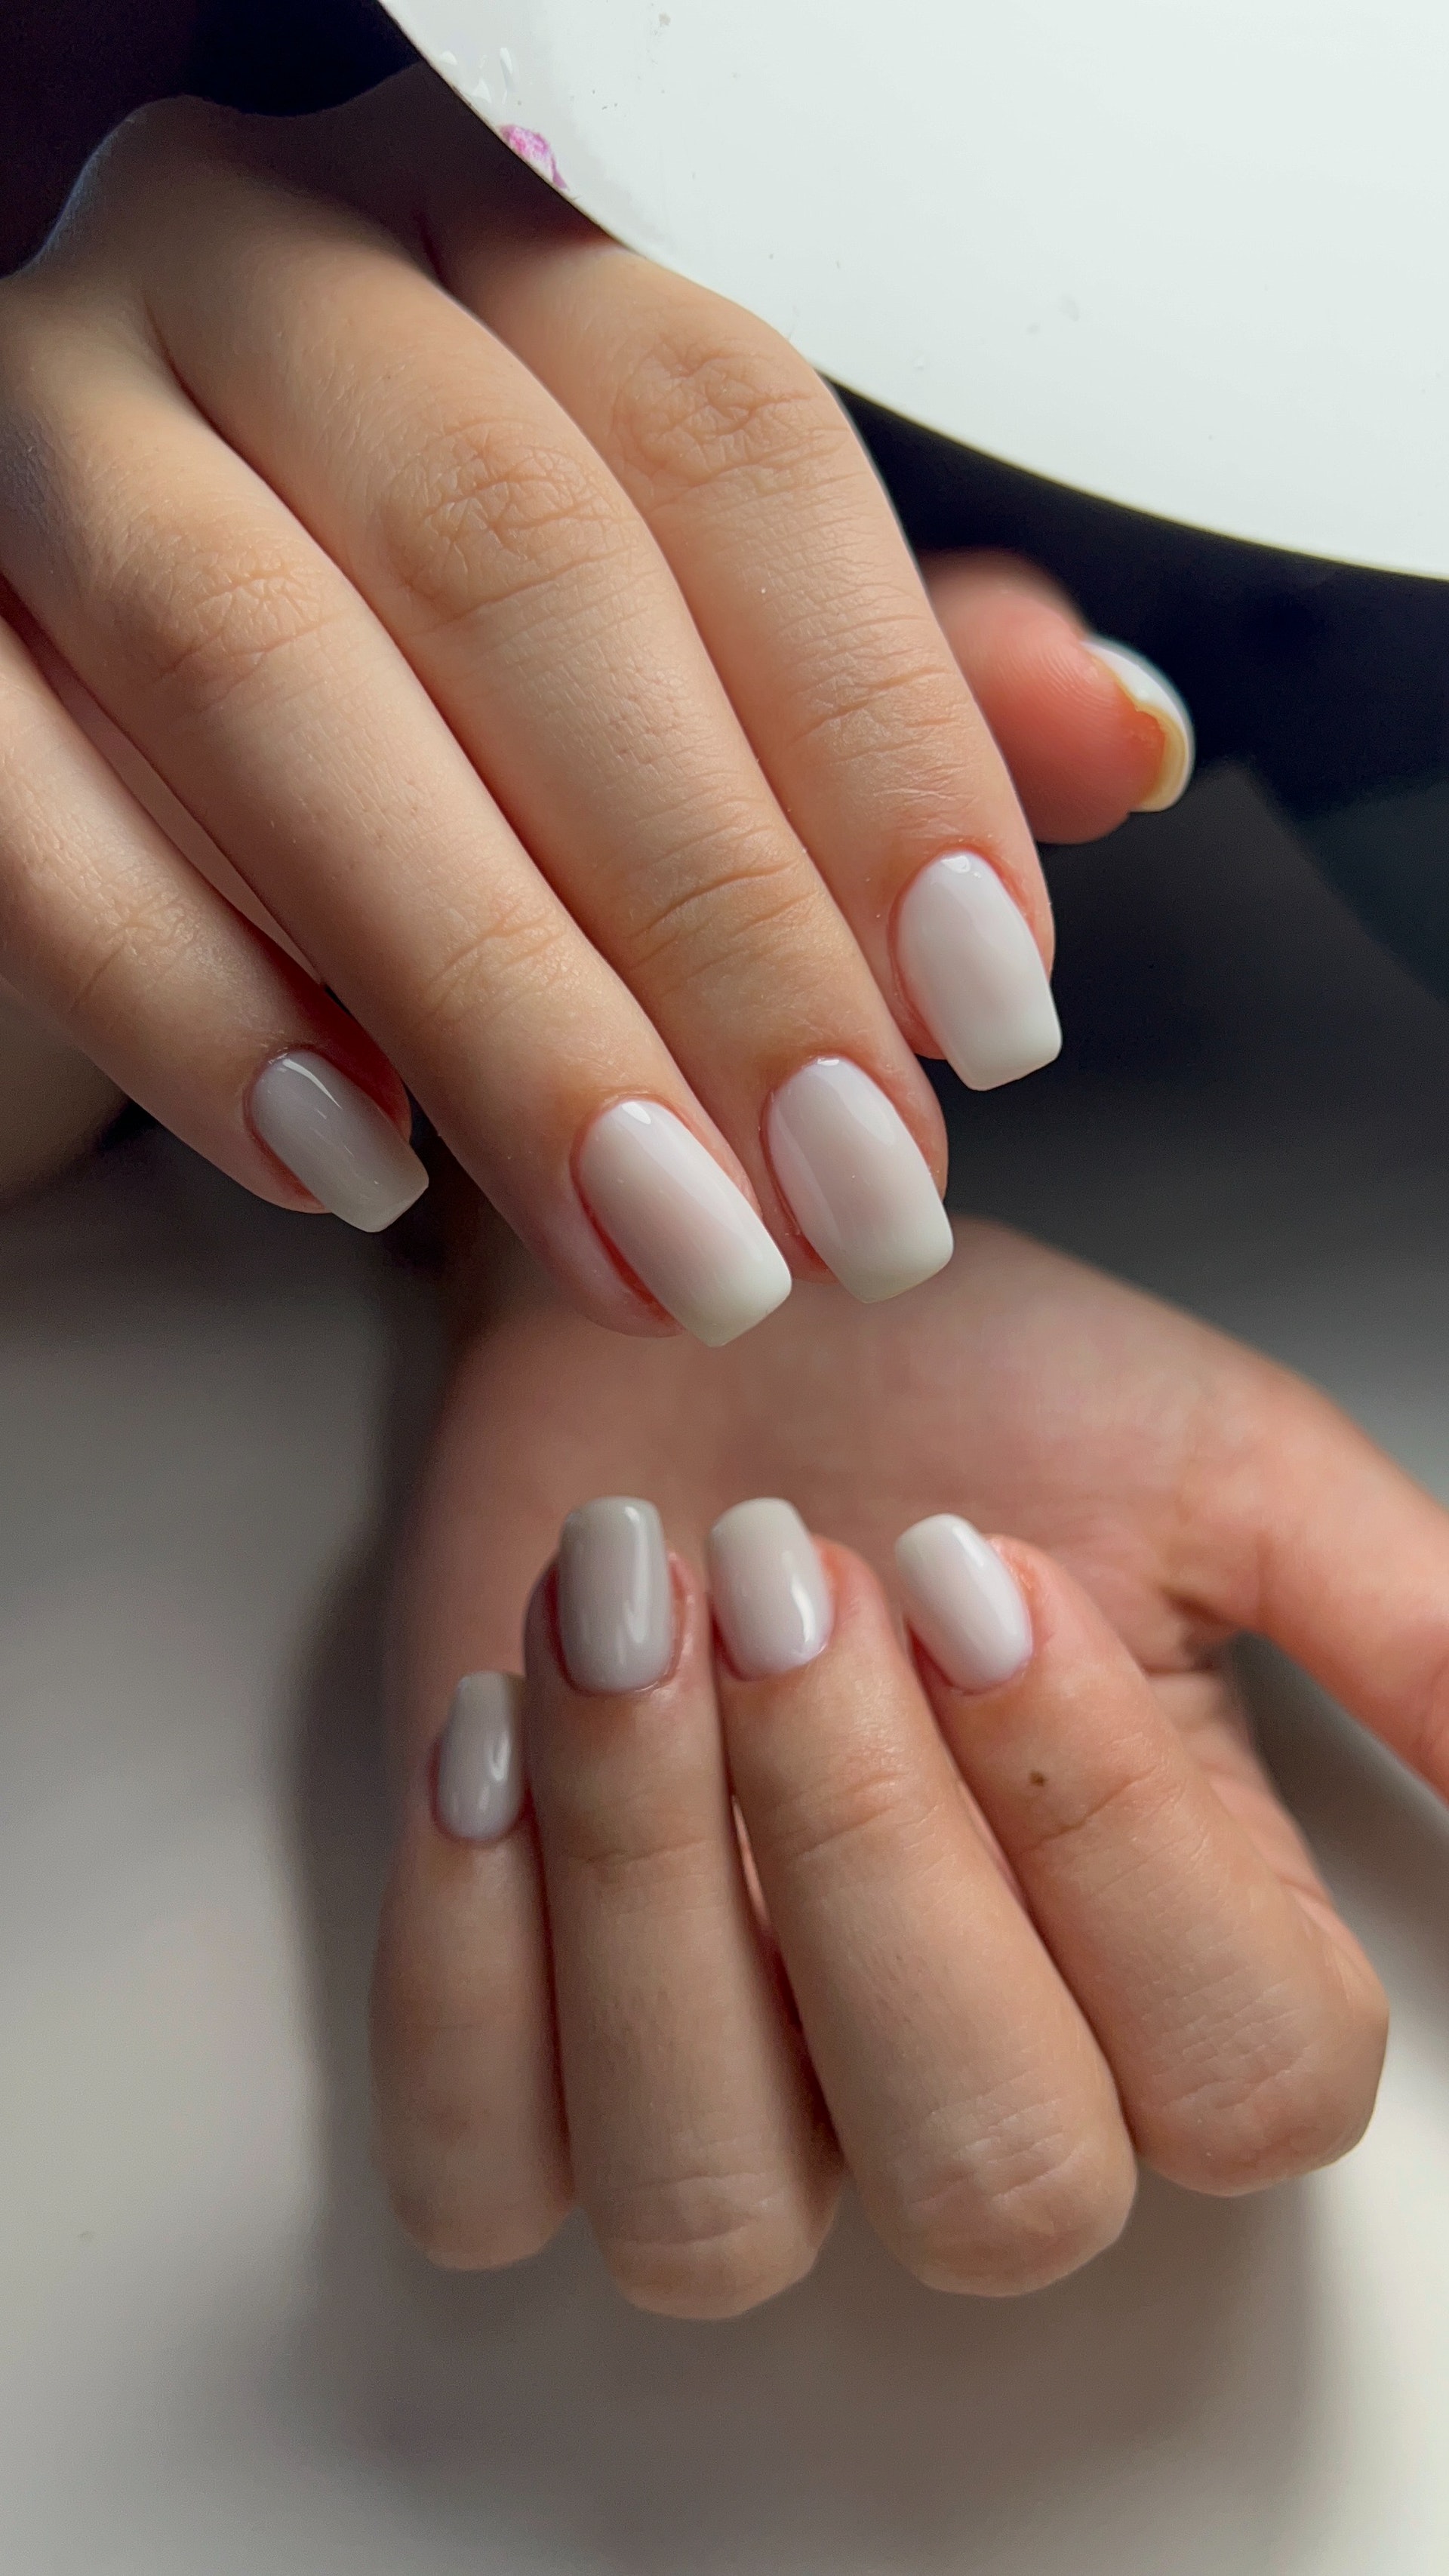 A woman wearing white nail polish | Source: Pexels